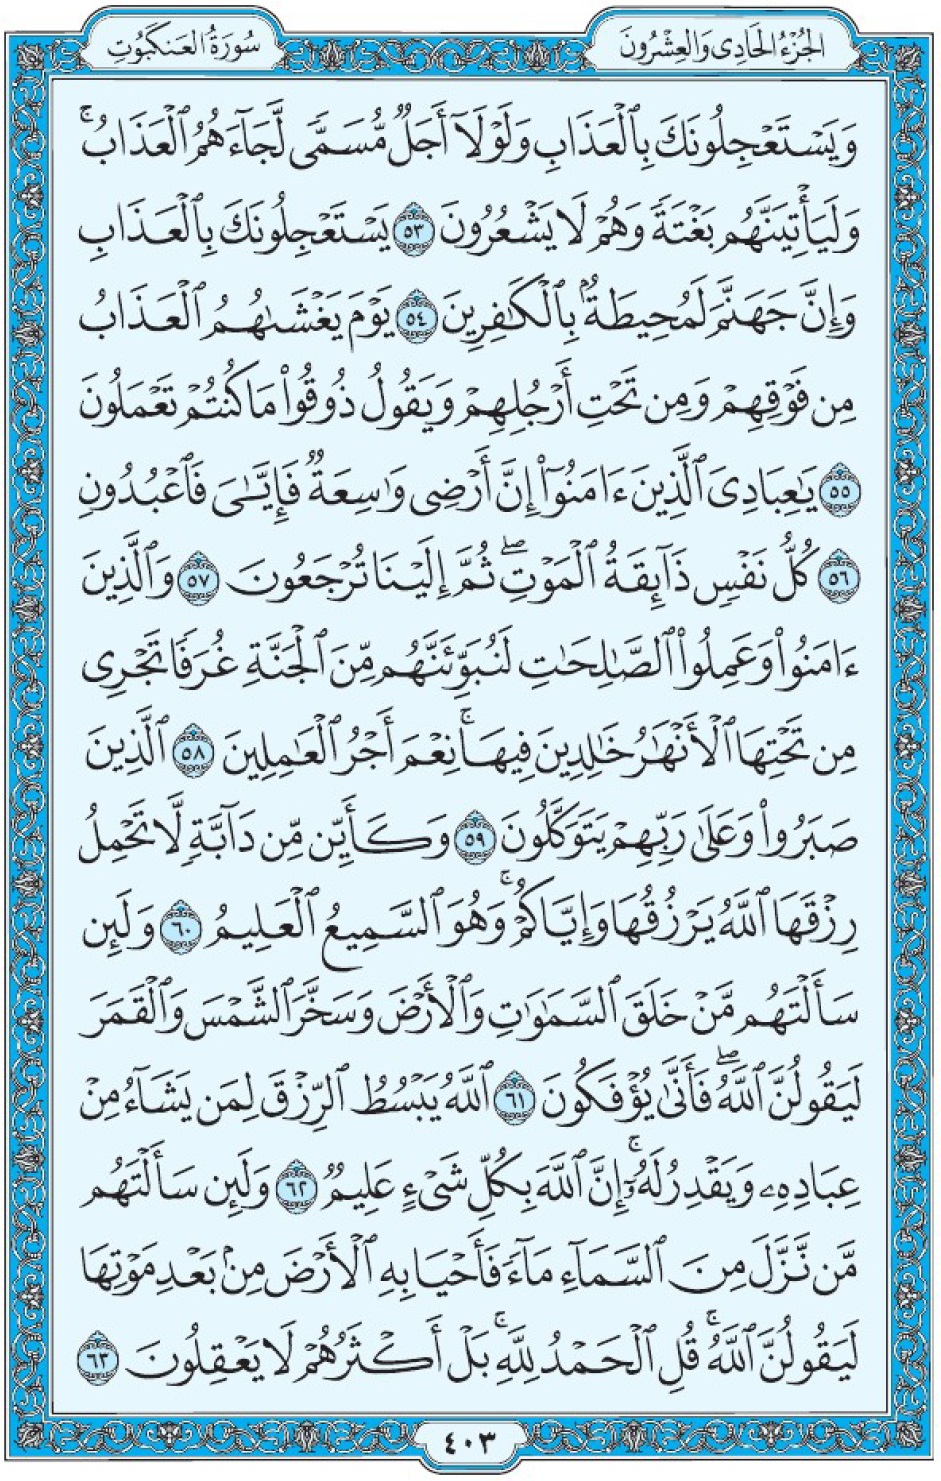 Коран Мединский мусхаф страница 403, Аль-‘Анкабут, аят 53-63